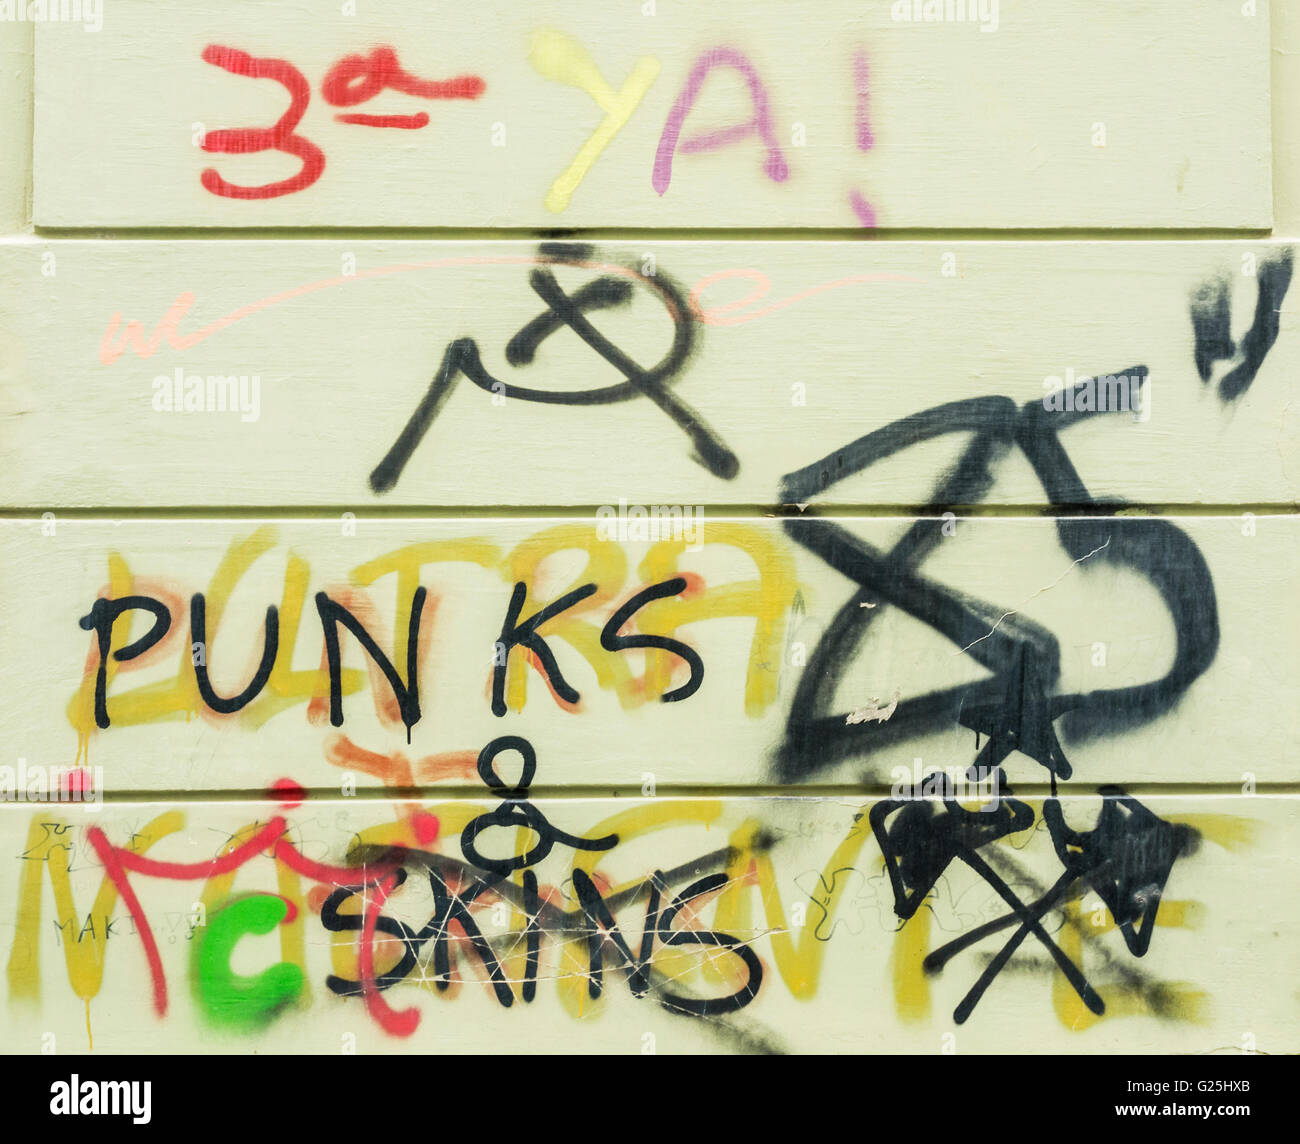 Punks and skins graffiti Stock Photo